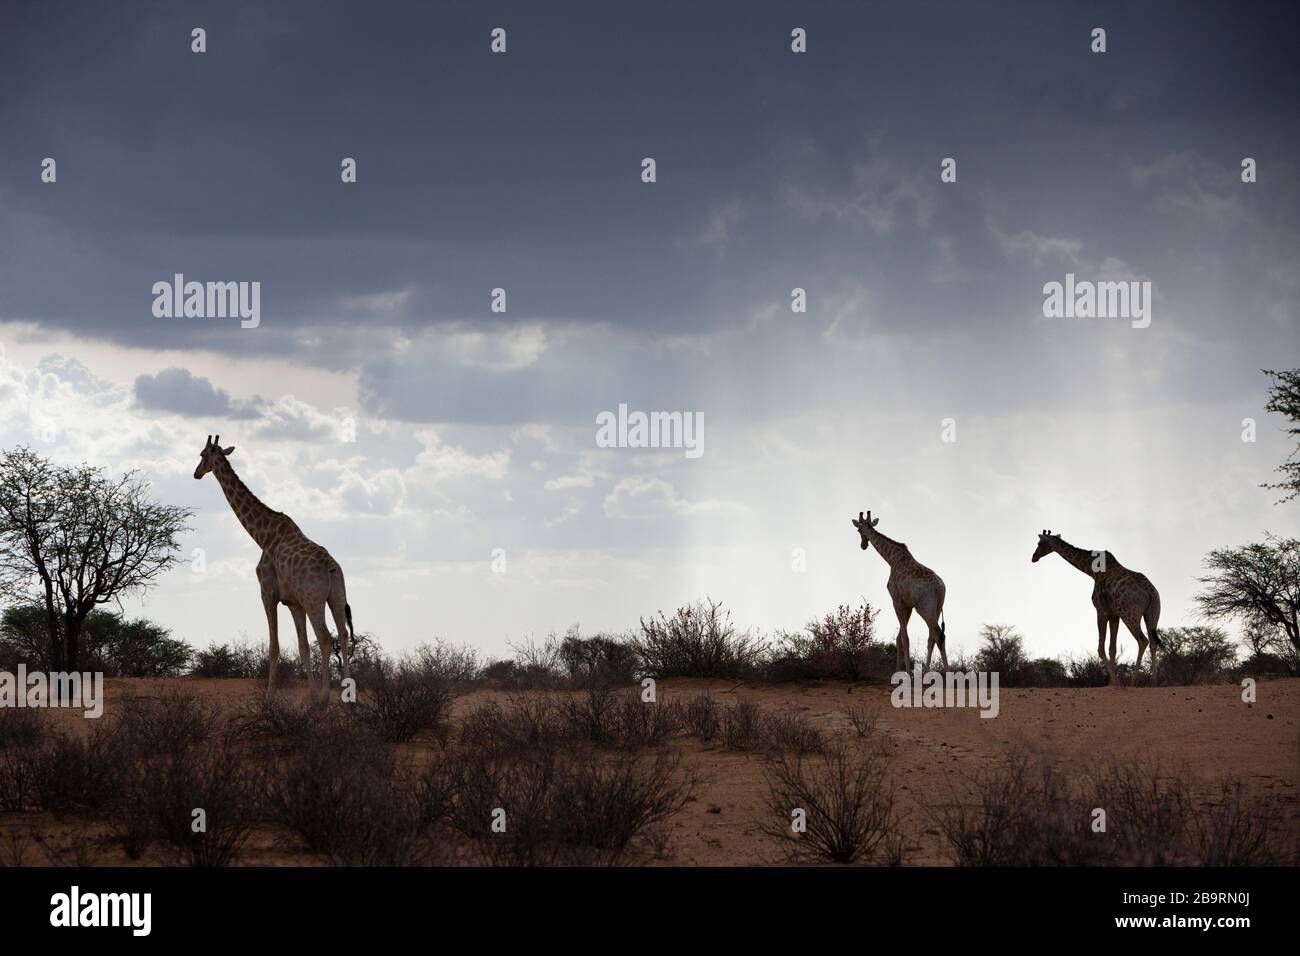 Jirafa angoleña en el desierto de Kalahari, Giraffa giraffa angolensis, Cuenca de Kalahari, Namibia Foto de stock